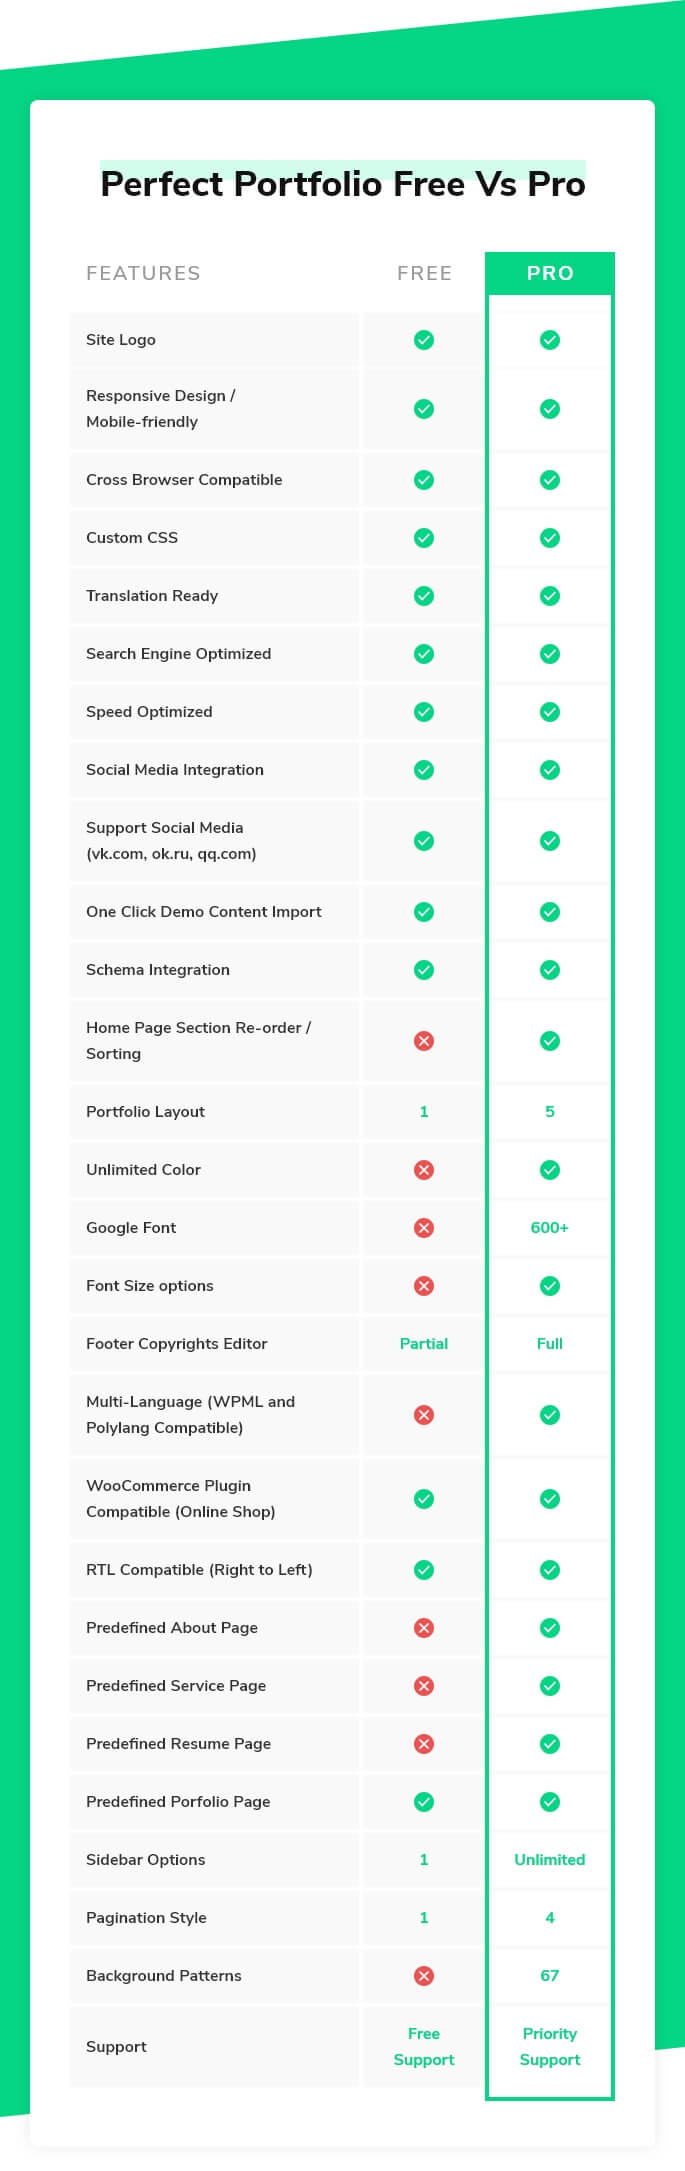 Perfect Portfolio Free vs Pro comparison chart